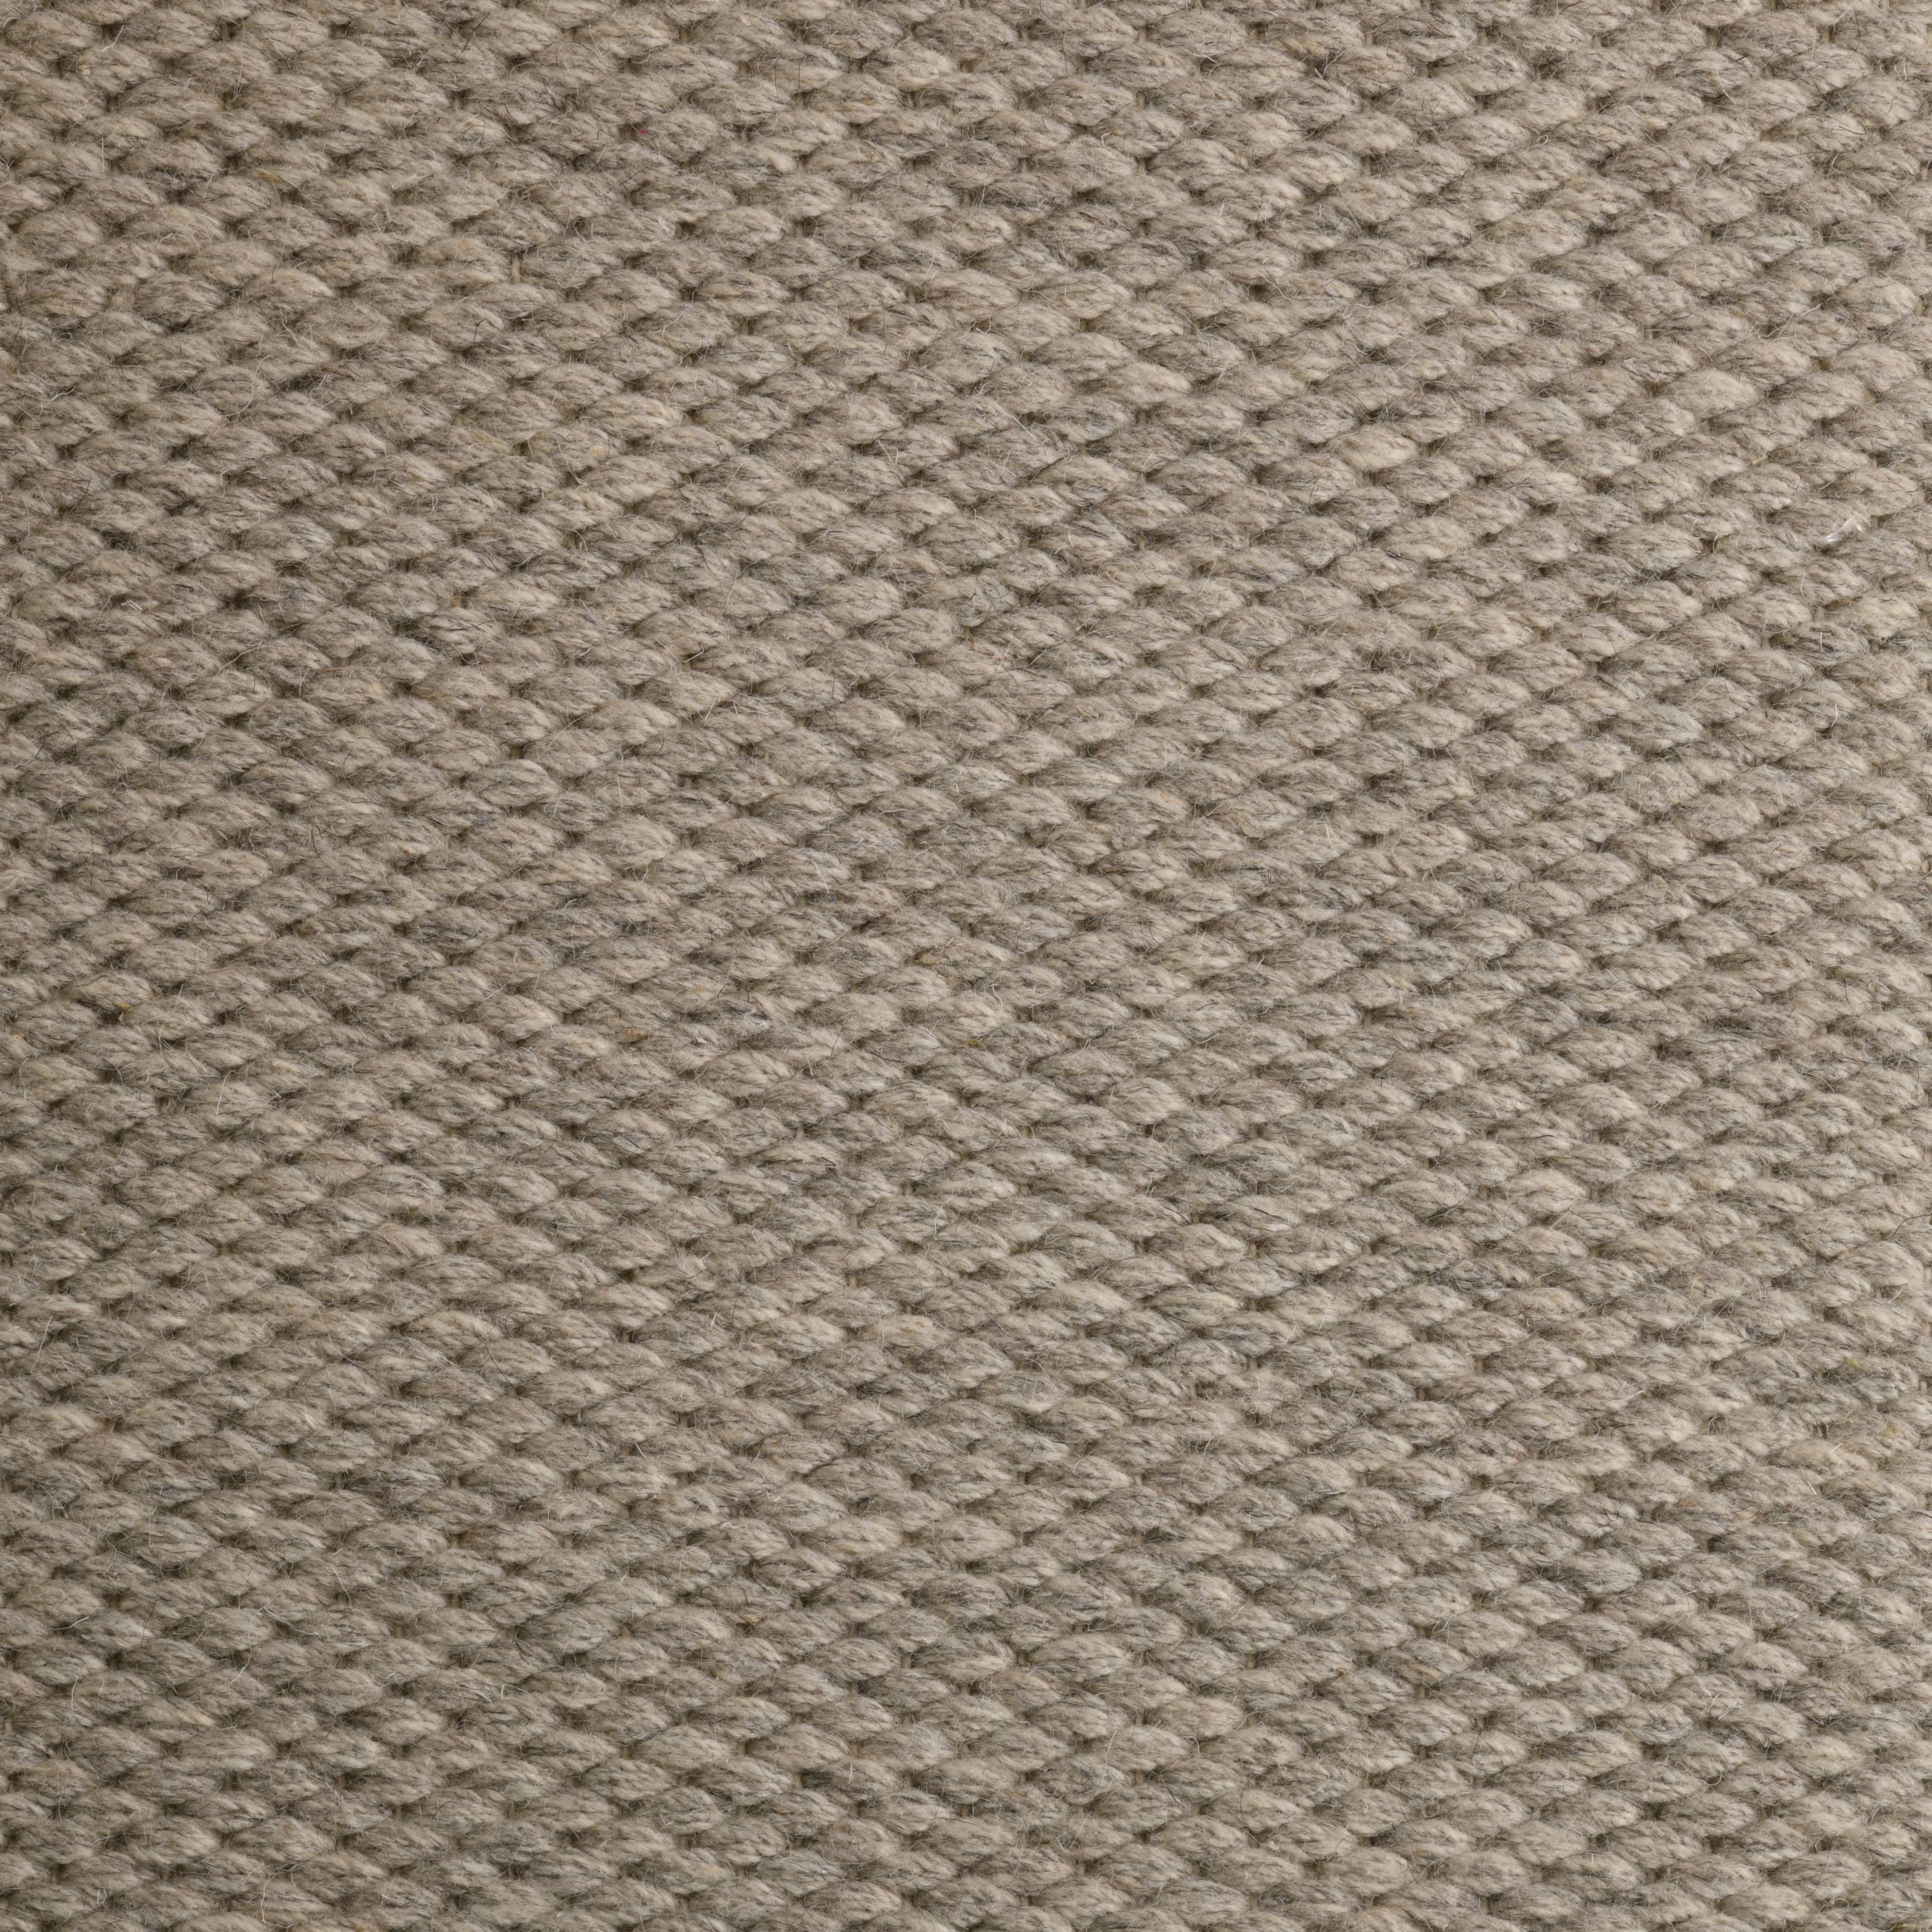 Quies, Grey, Handwoven, New Zealand and Mediterranean wools, 6' x 9'